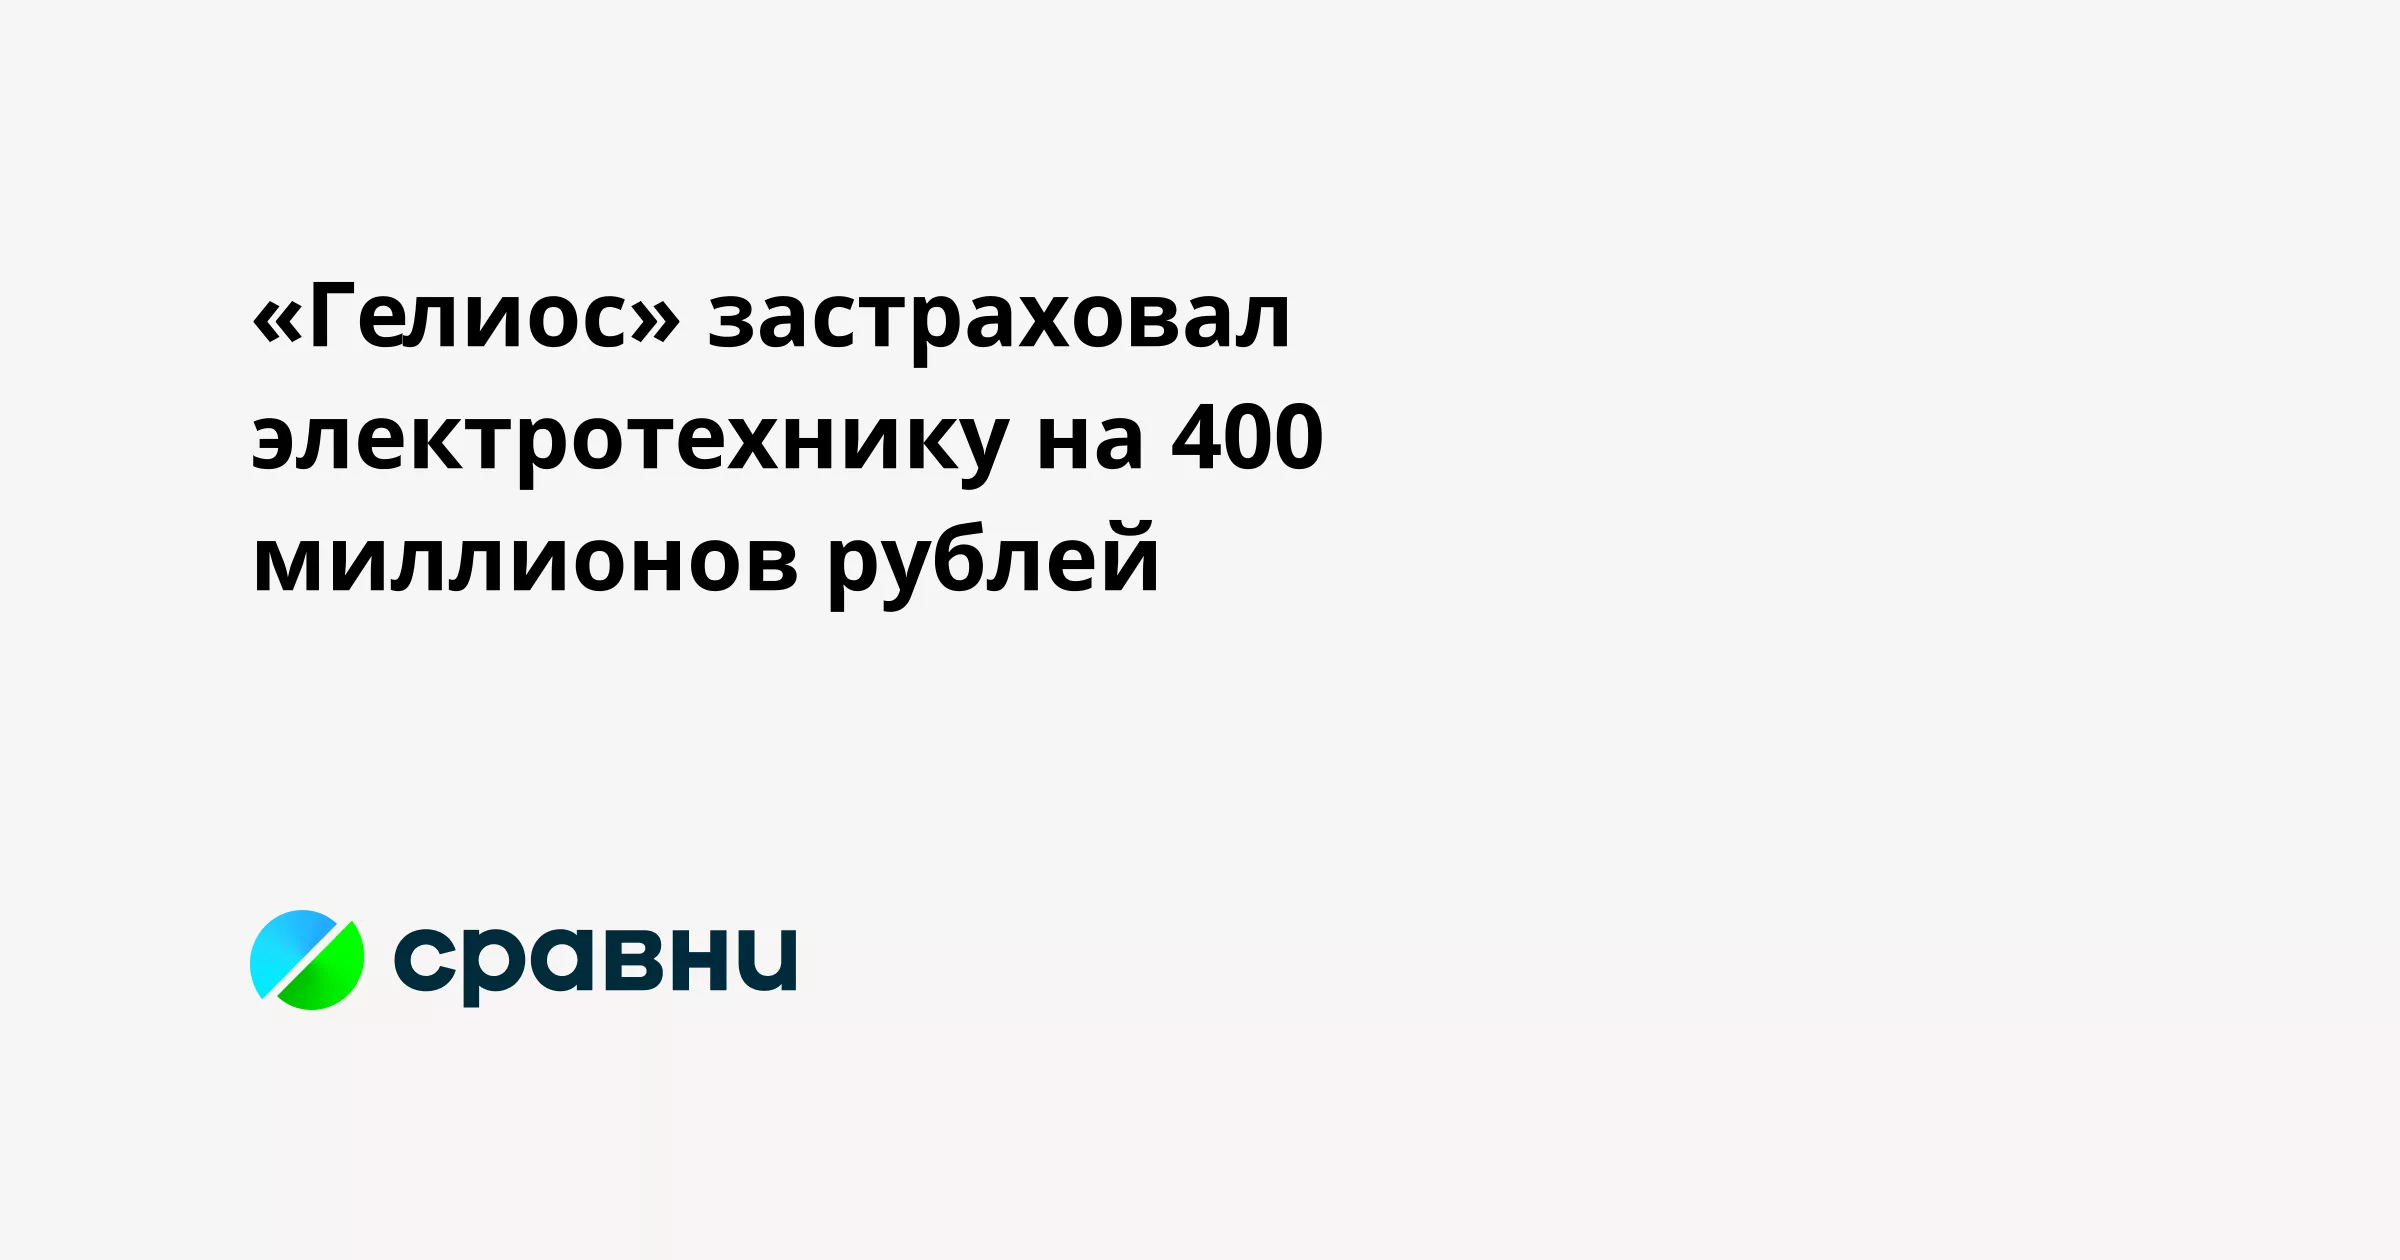 «Гелиос» застраховал электротехнику на 400 миллионов рублей